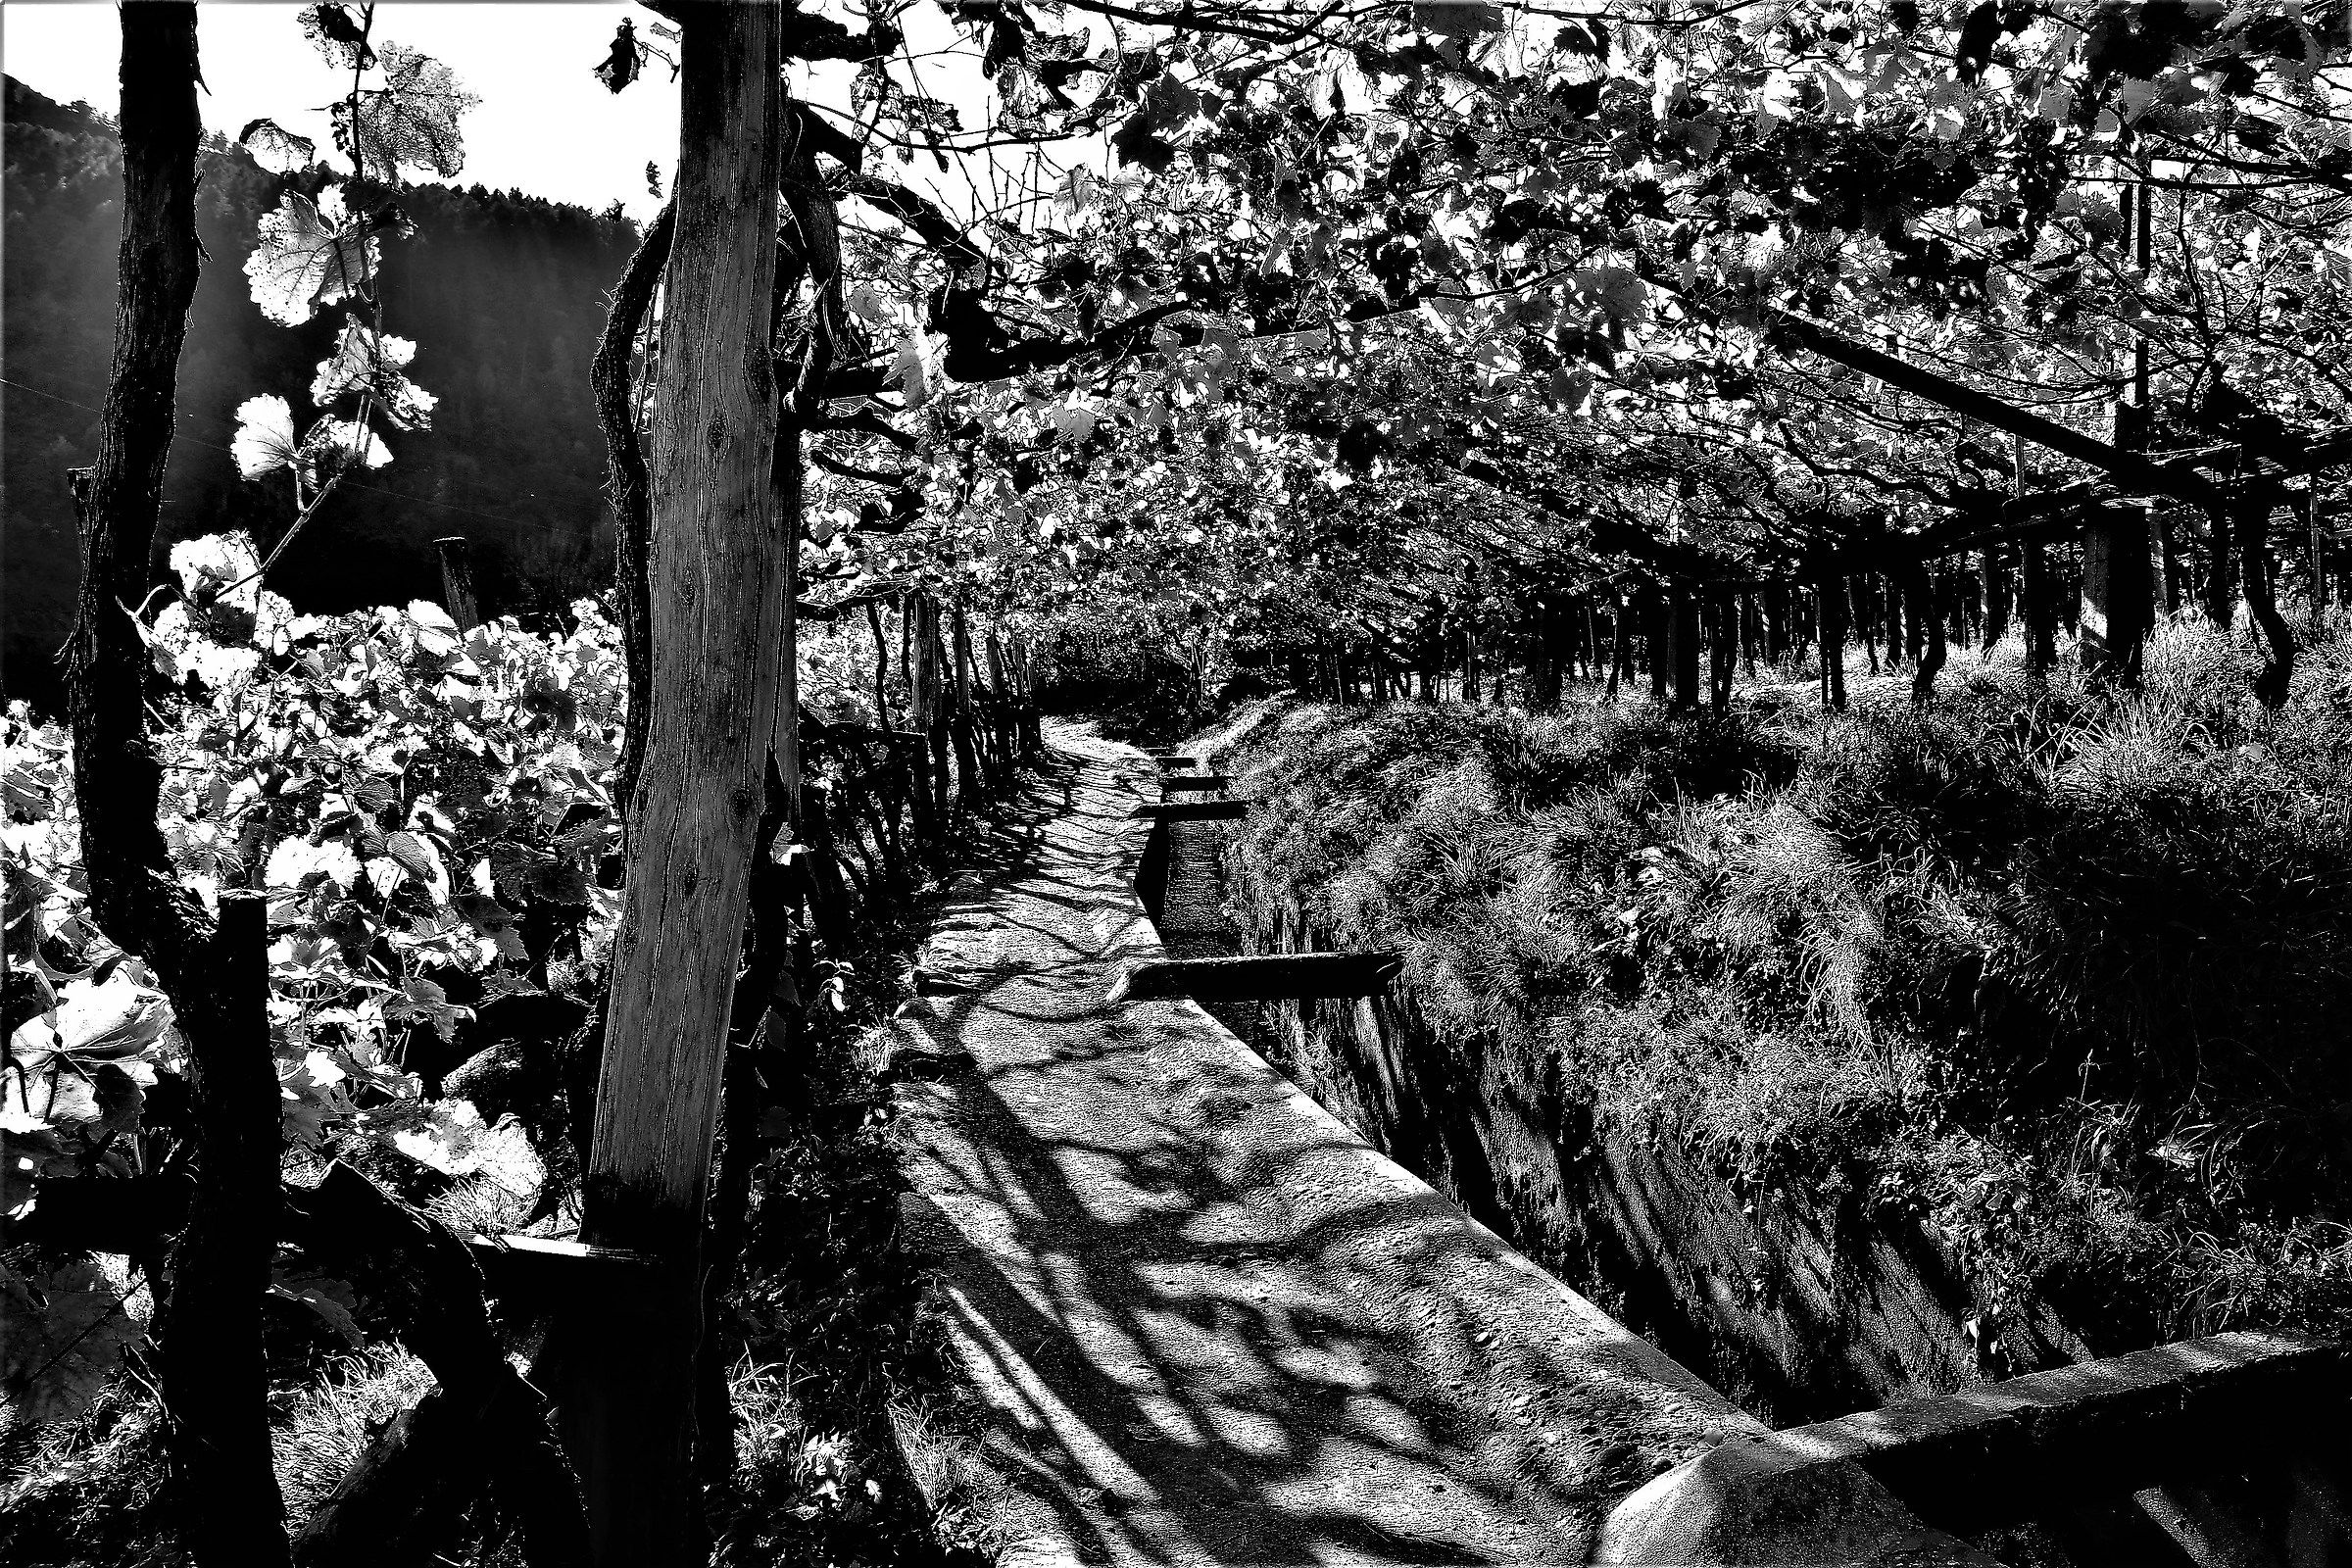 Below the vineyards in Merano...